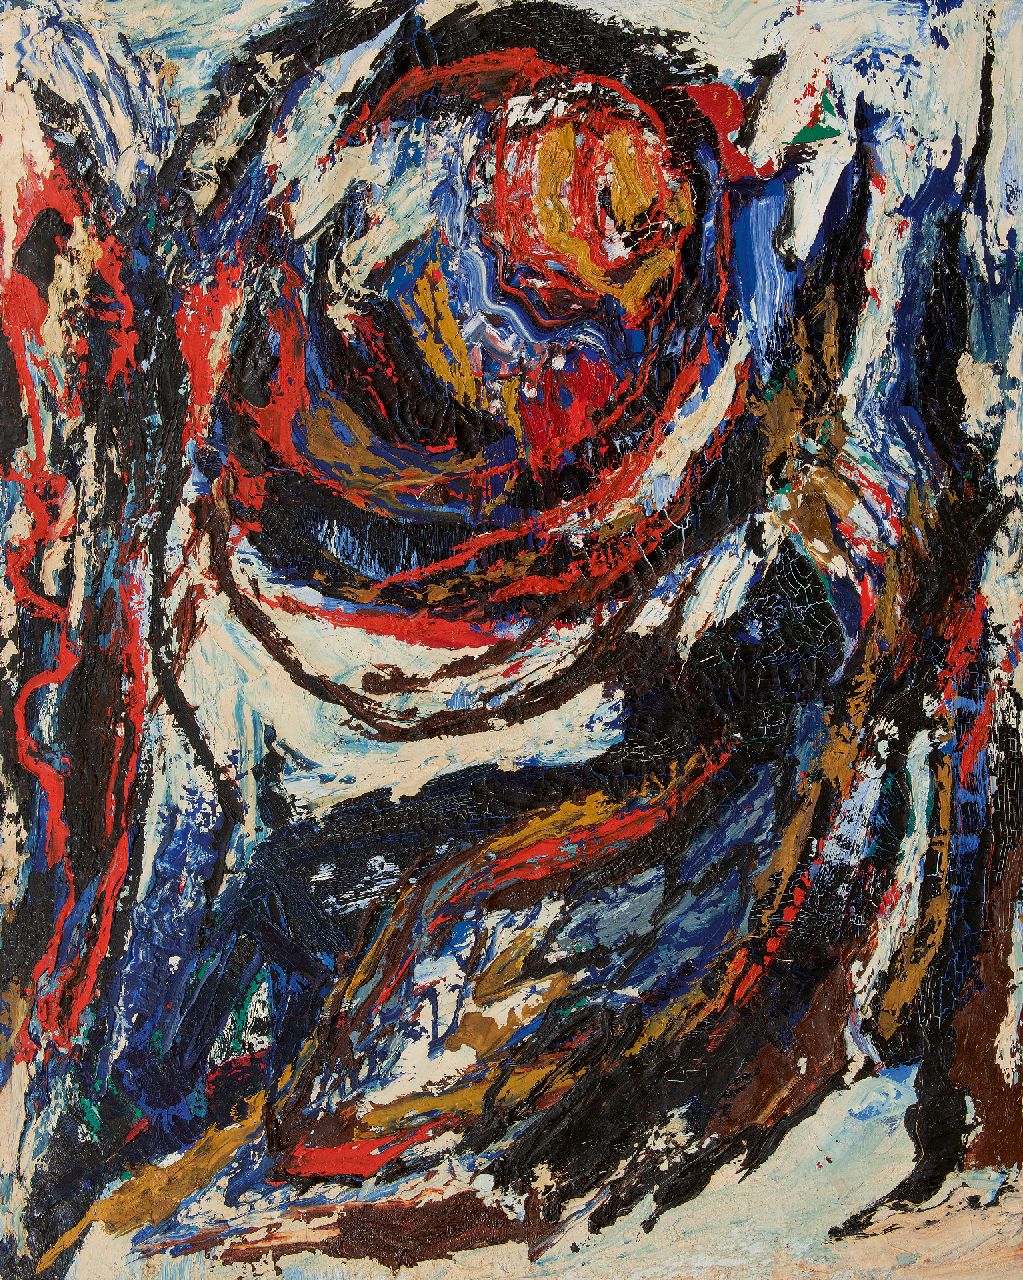 Hunziker F.  | Frieda Hunziker | Schilderijen te koop aangeboden | Draaikolk, olieverf op doek 125,2 x 100,4 cm, gesigneerd op spieraam (tweemaal) en te dateren 1963